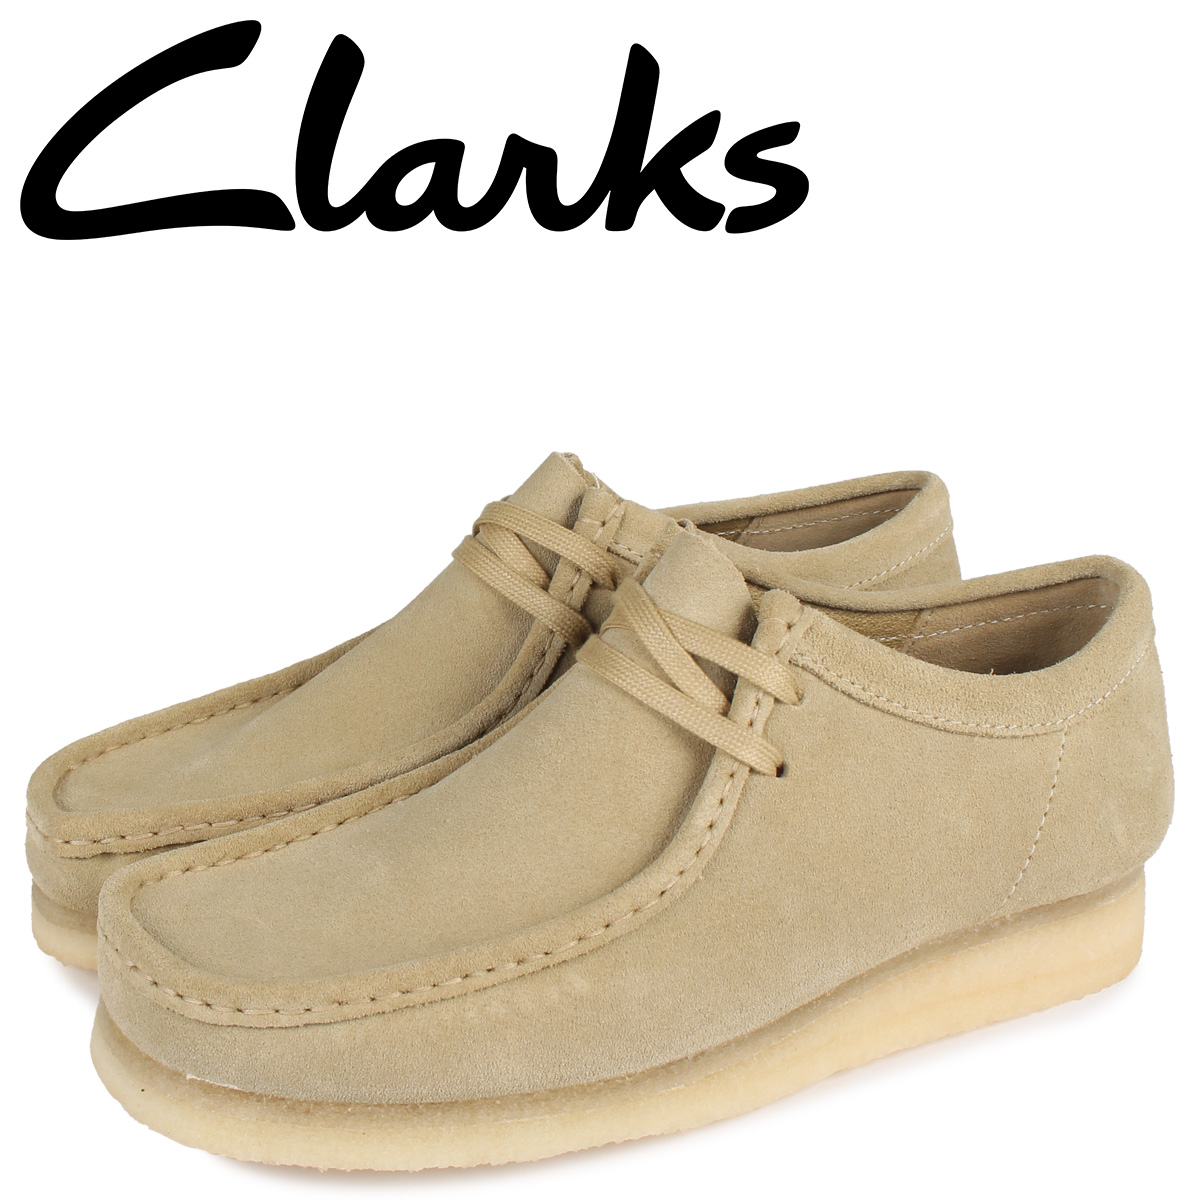 クラークス Clarks ワラビー ブーツ メンズ WALLABEE ベージュ 26155515